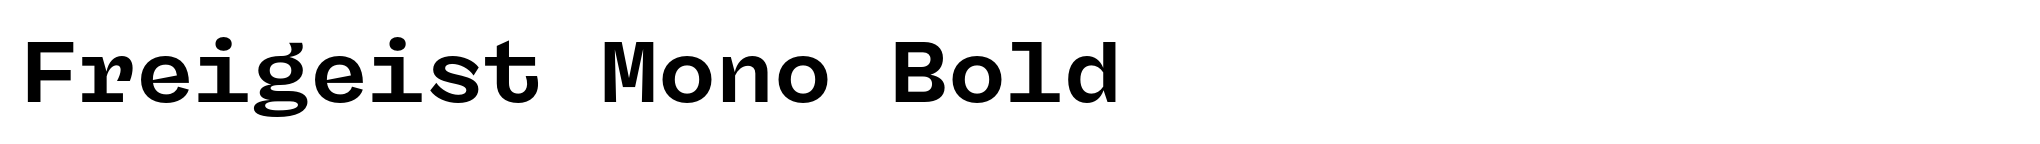 Freigeist Mono Bold image